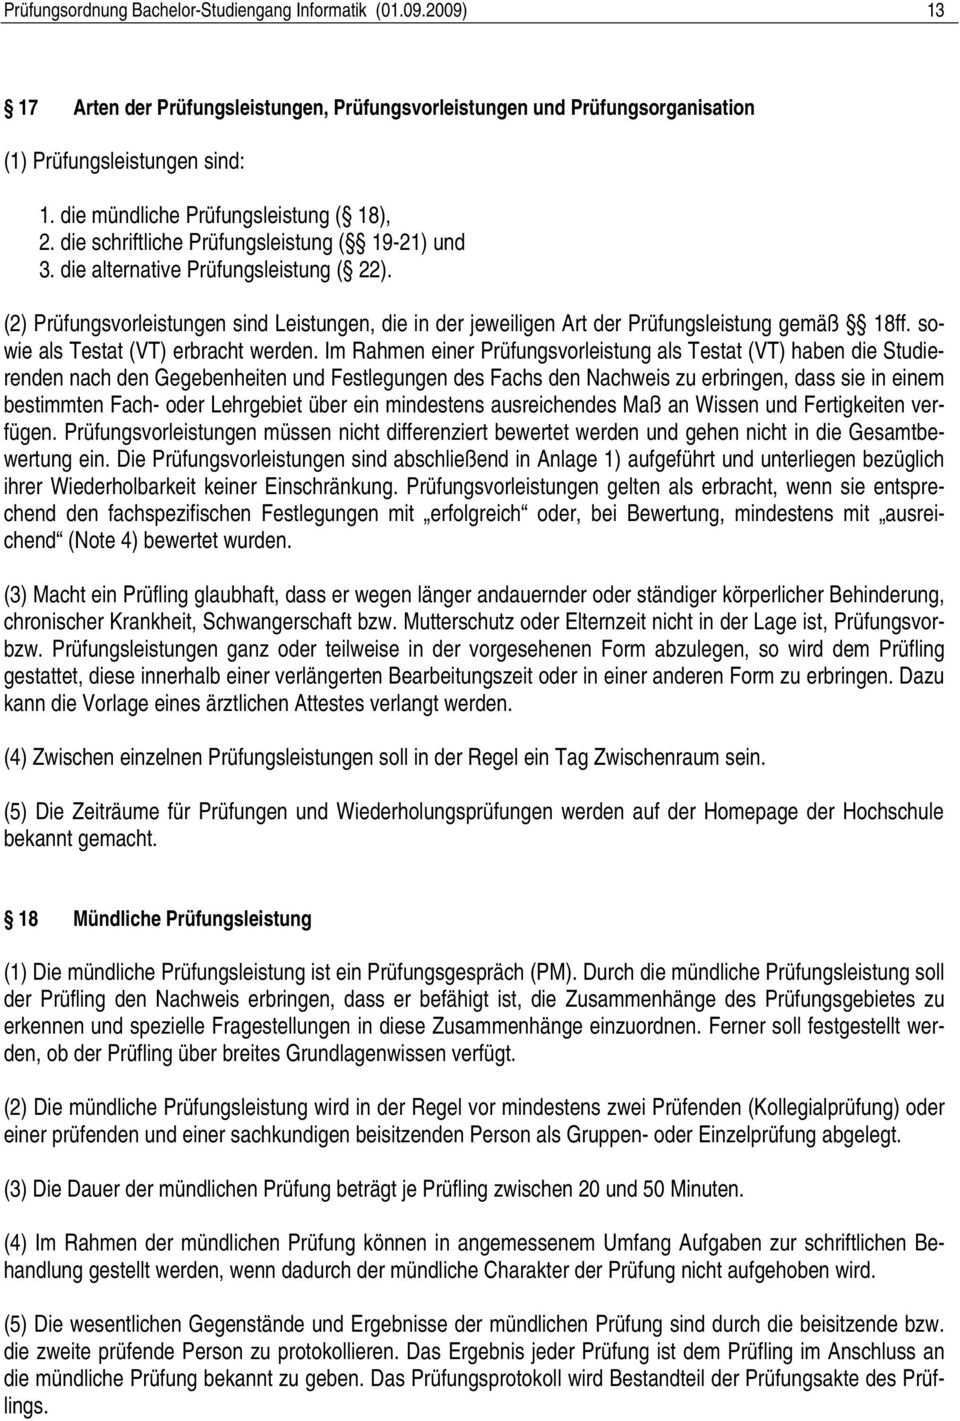 Prufungsordnung Fur Den Bachelor Studiengang Informatik An Der Hochschule Zittau Gorlitz Vom Pdf Free Download